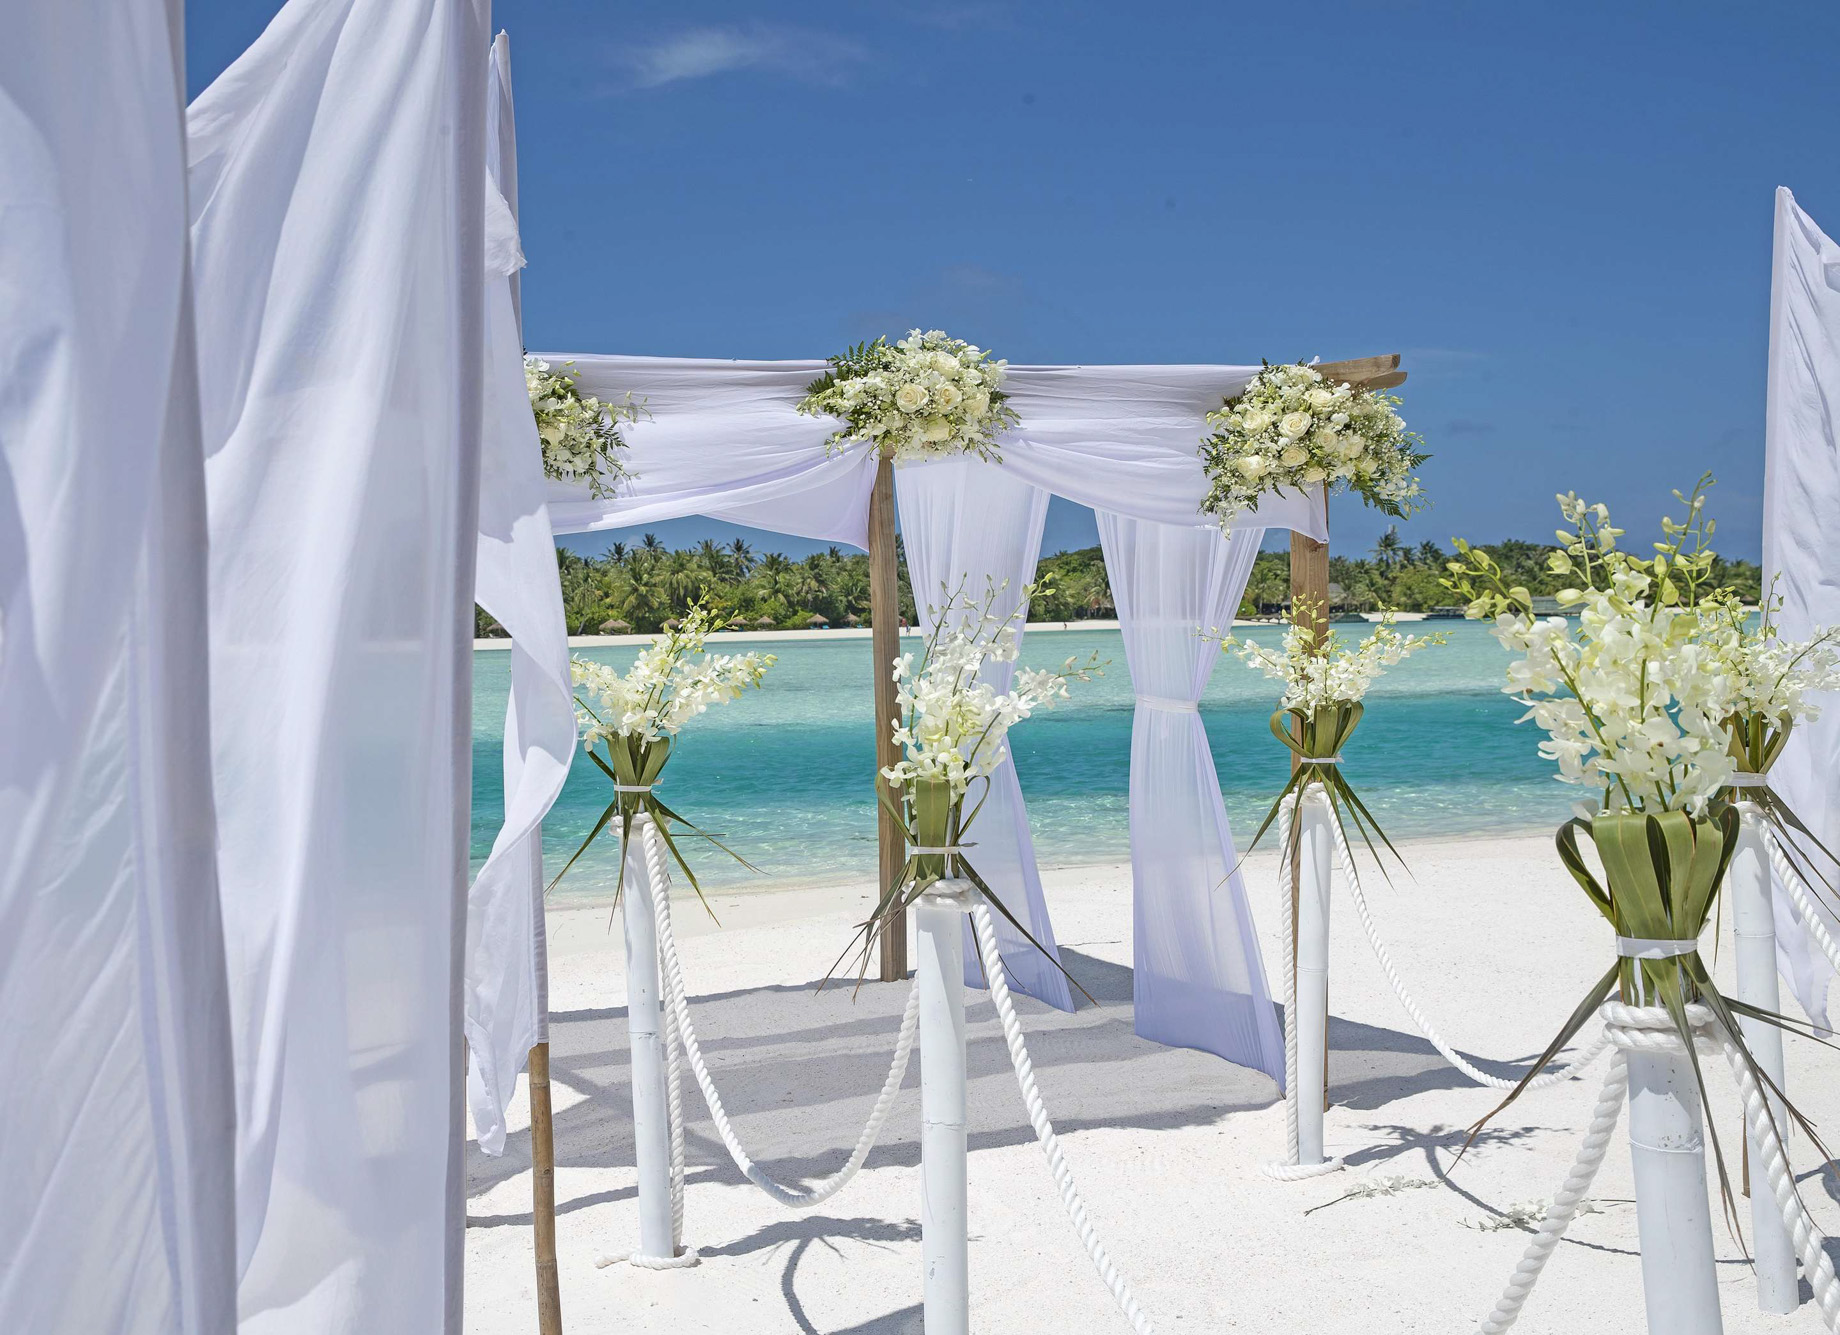 Naladhu Private Island Maldives Resort - South Male Atoll, Maldives - Beach Wedding